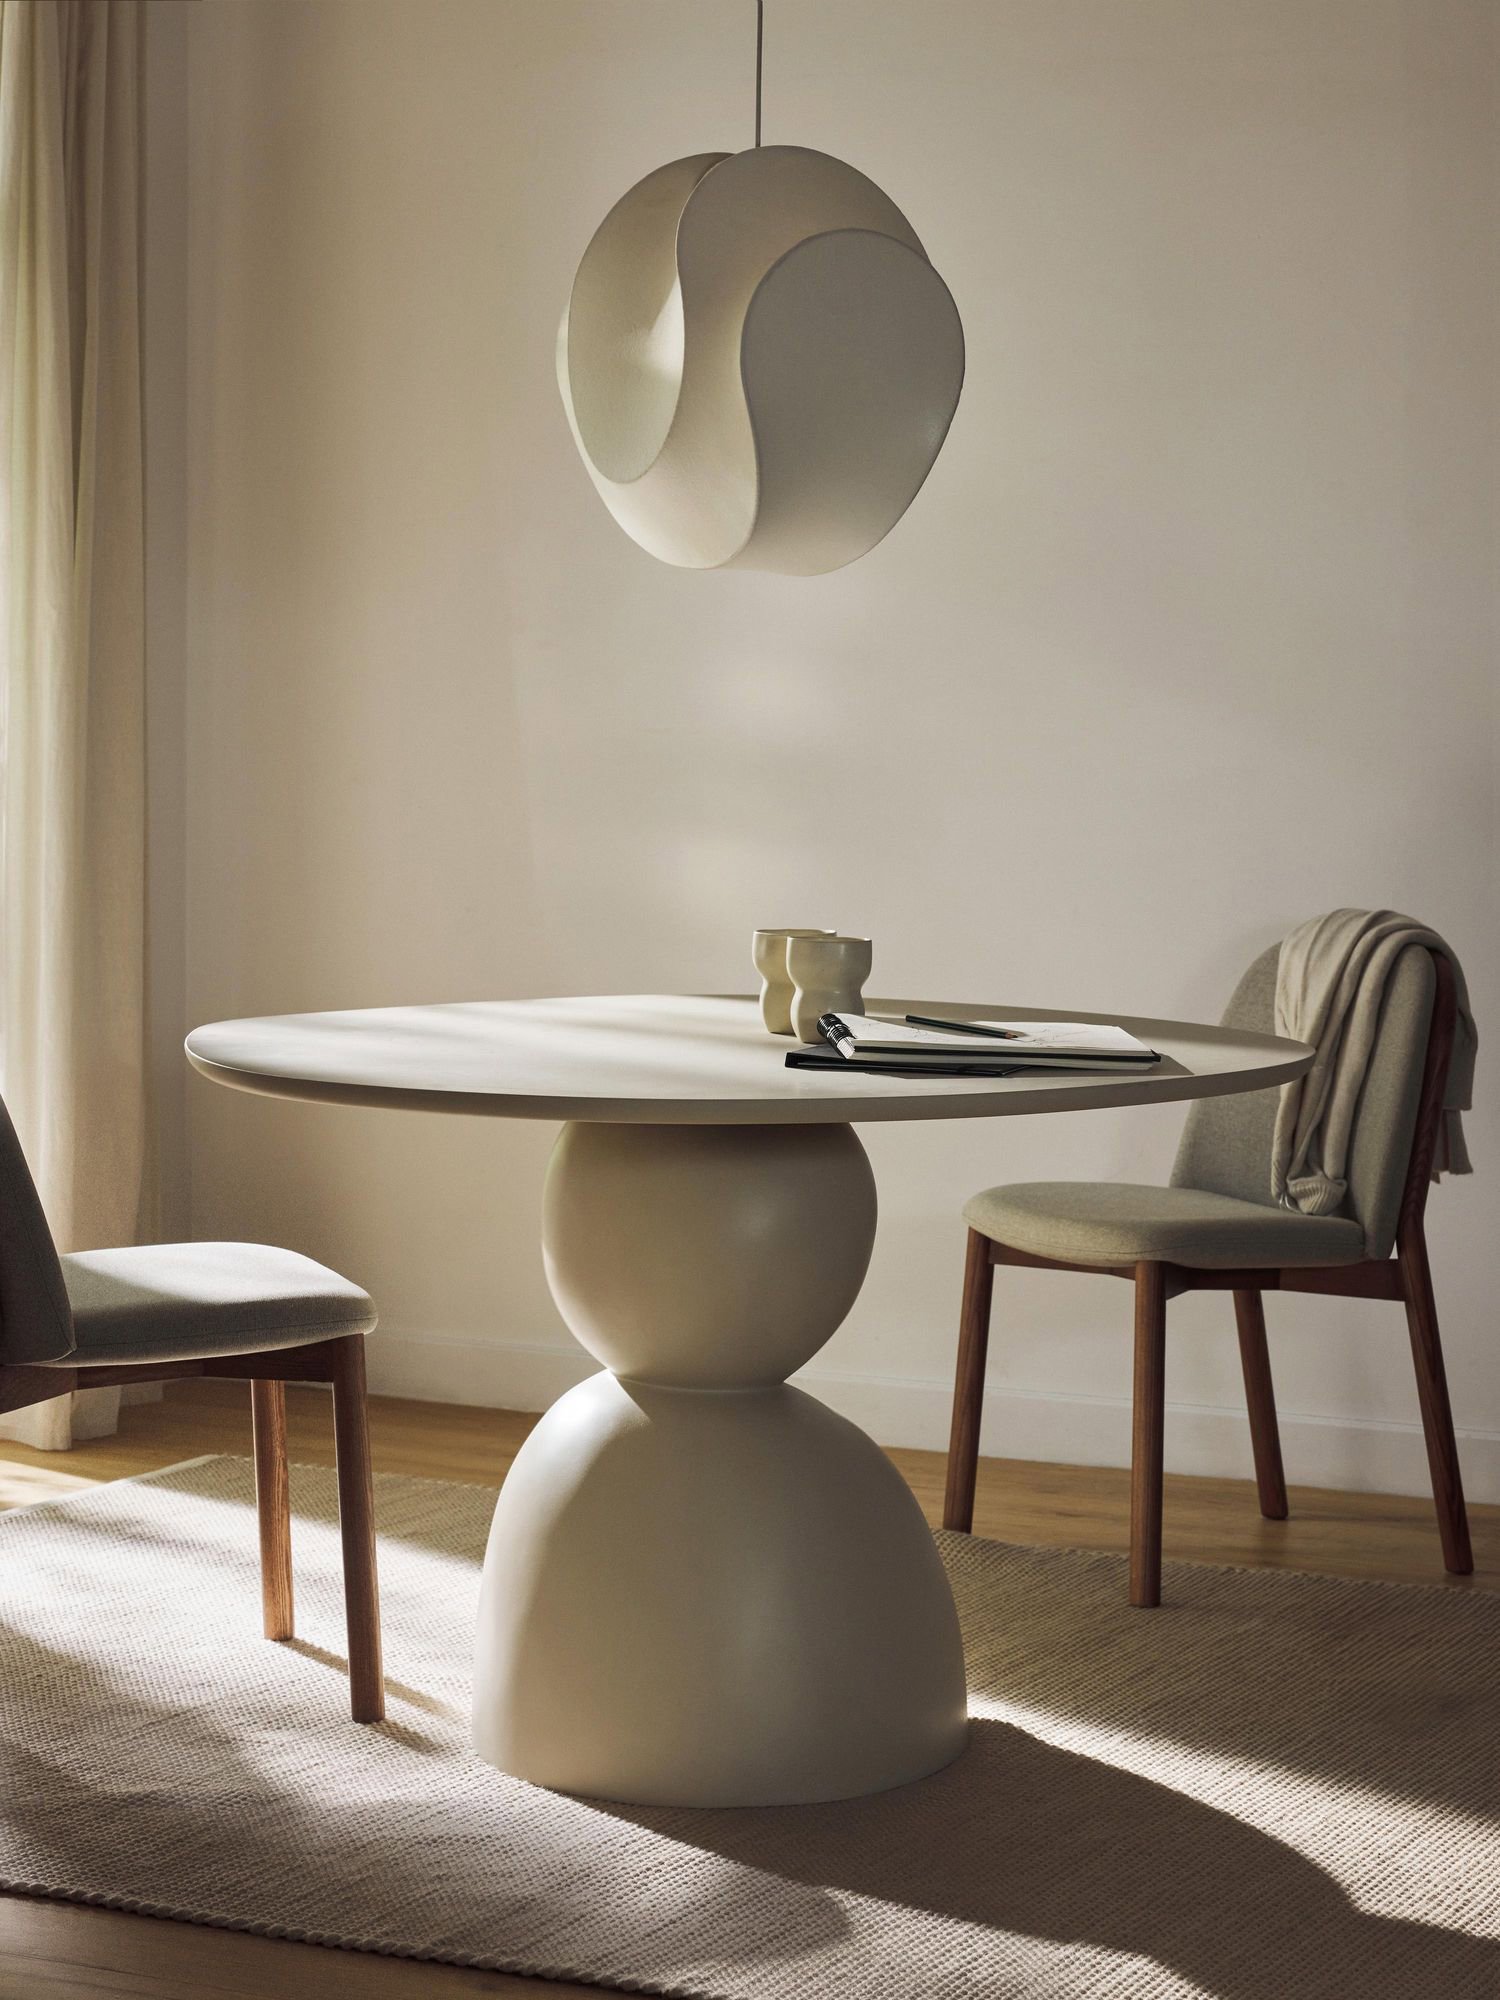 Comedor de estética sólida con dos bloques redondeados y una superficie redonda lisa. Sobre la mesa, una lámpara de diseños abstractos también en color blanco. 